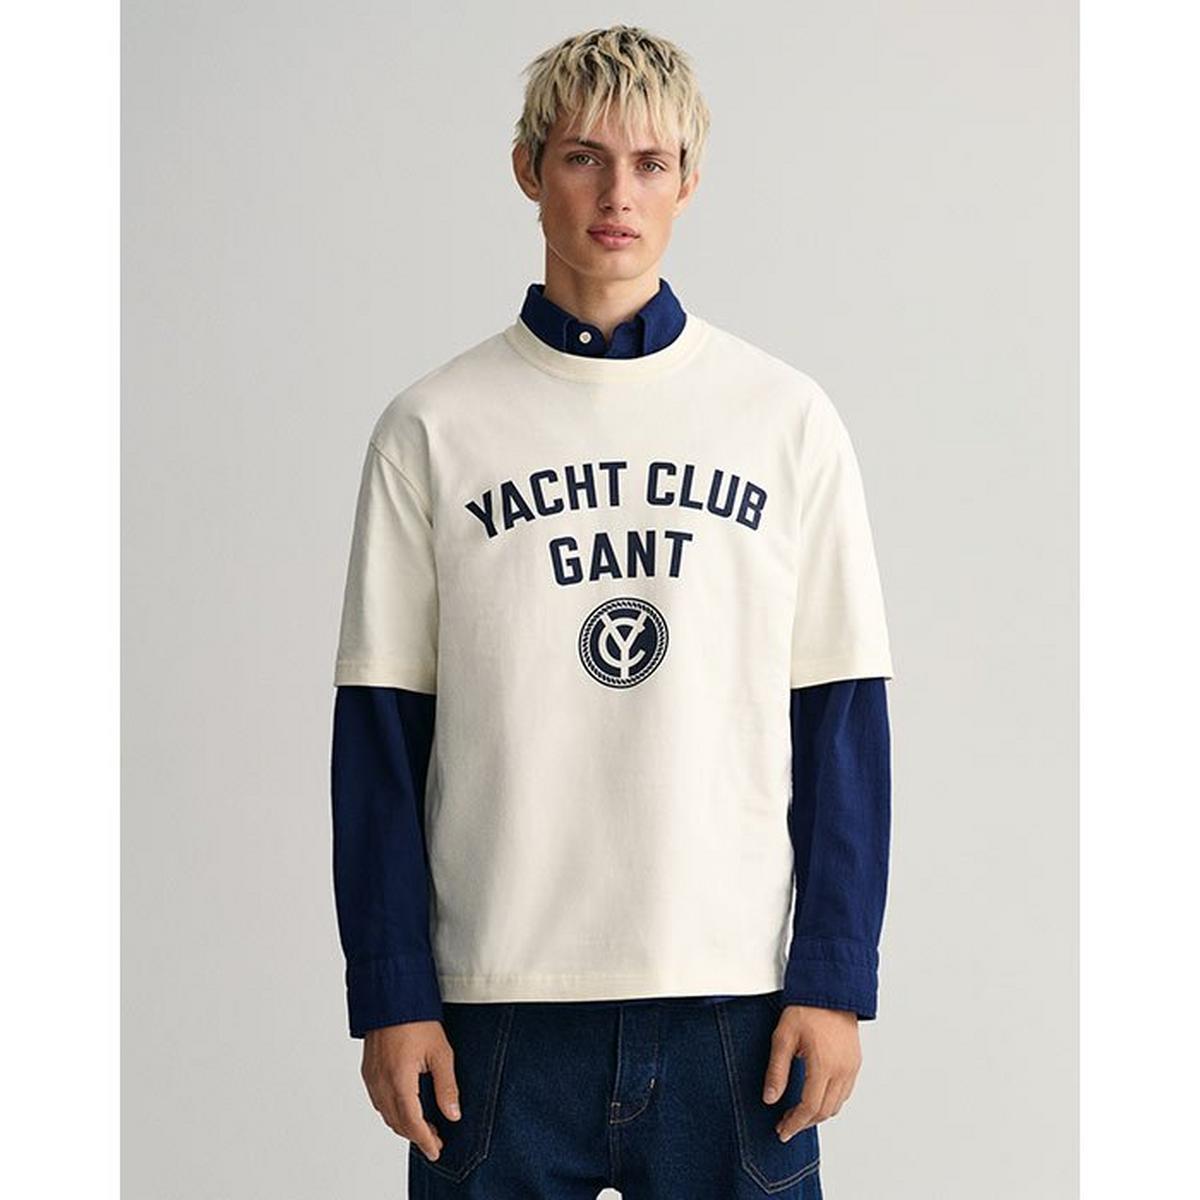 Men's Yacht Club T-Shirt